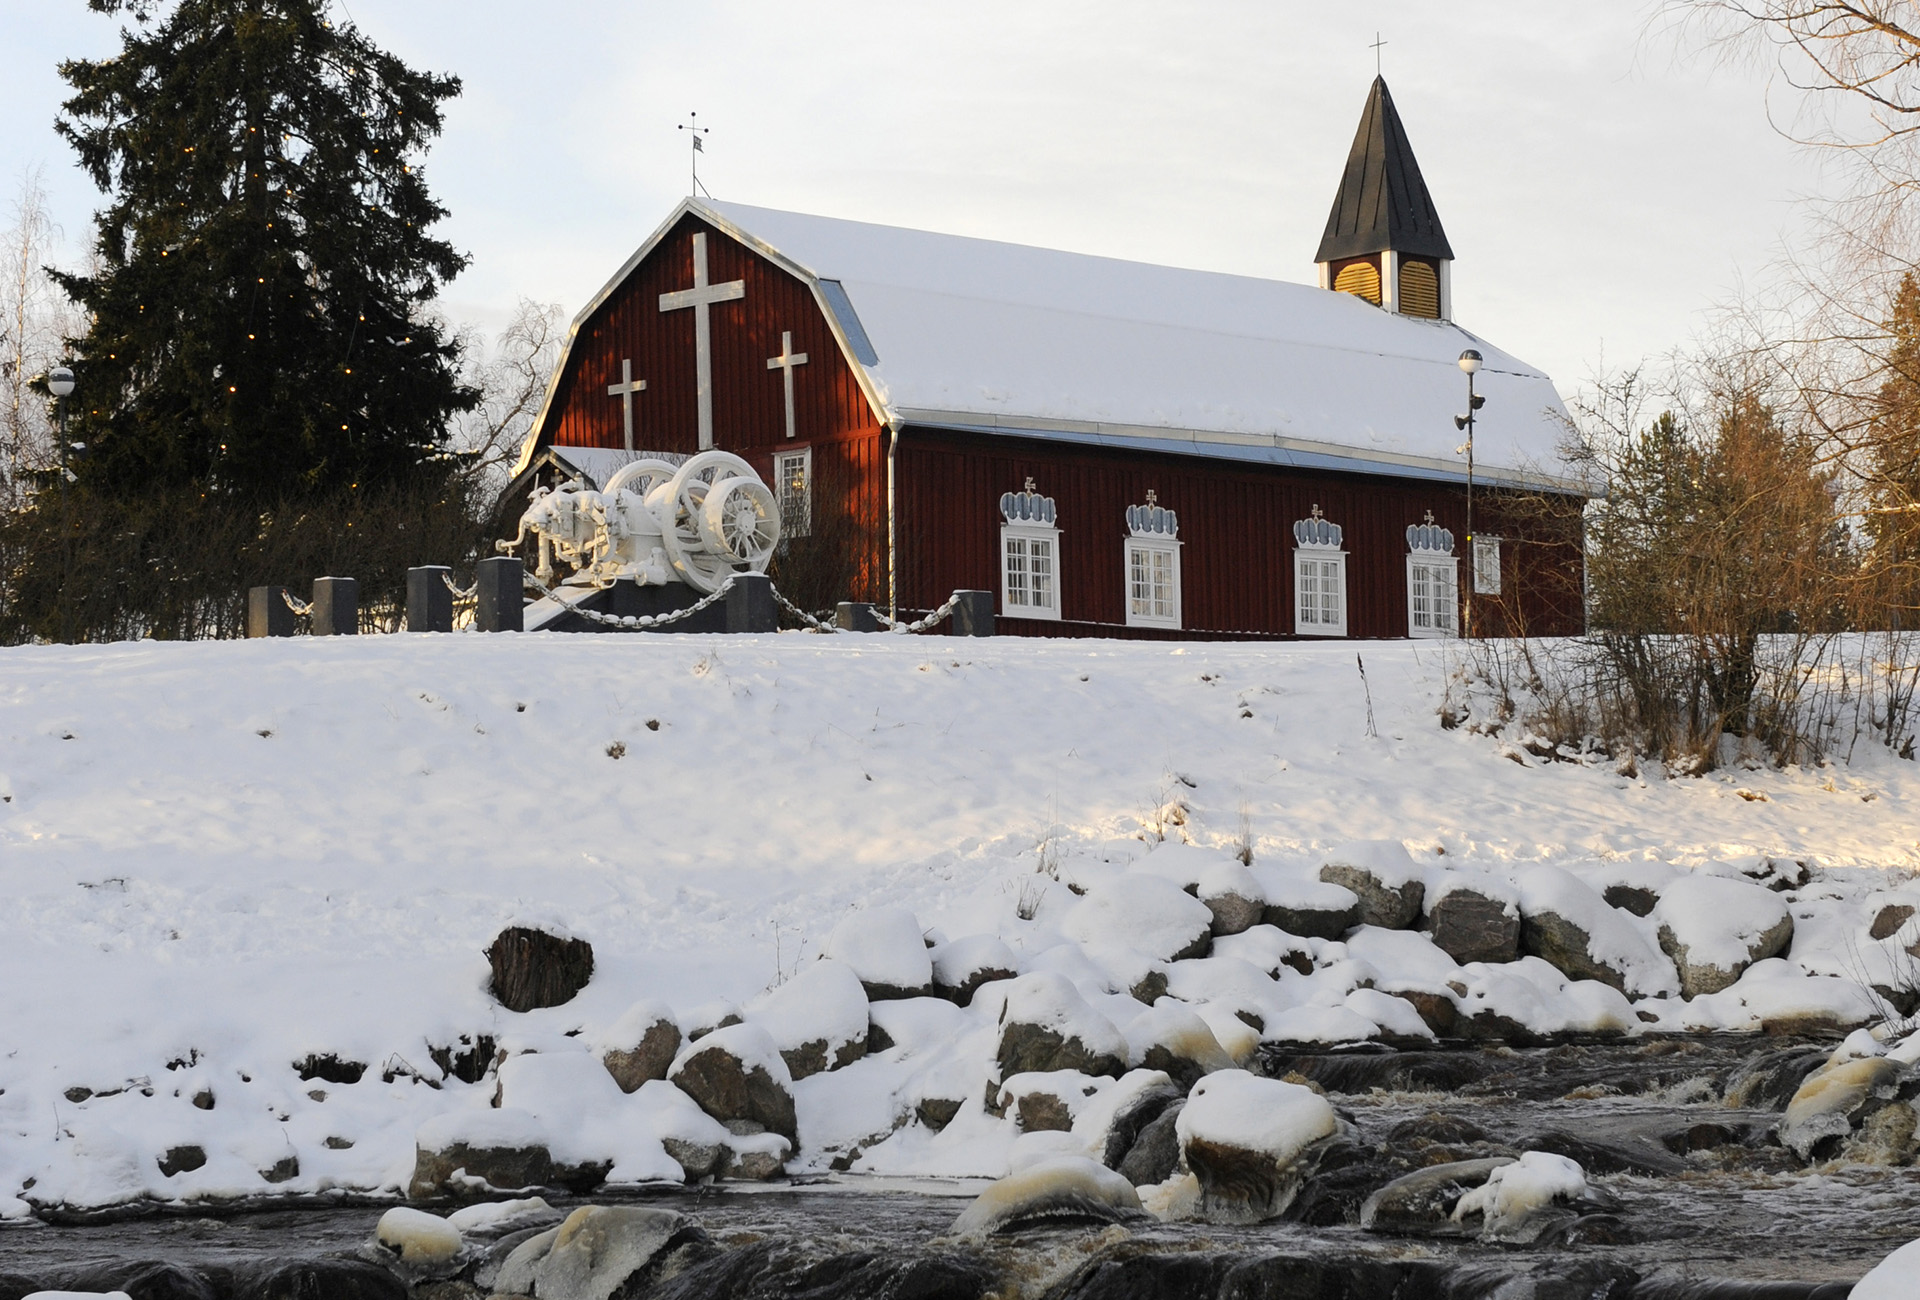 Kellokosken ruukkialue on yhä yksi Suomen yhtenäisimmistä rautateollisuusalueista. Ruukin vanhin rakennus on hirsirakenteinen kirkko, joka rakennettiin patoaltaan mäelle vuonna 1800.